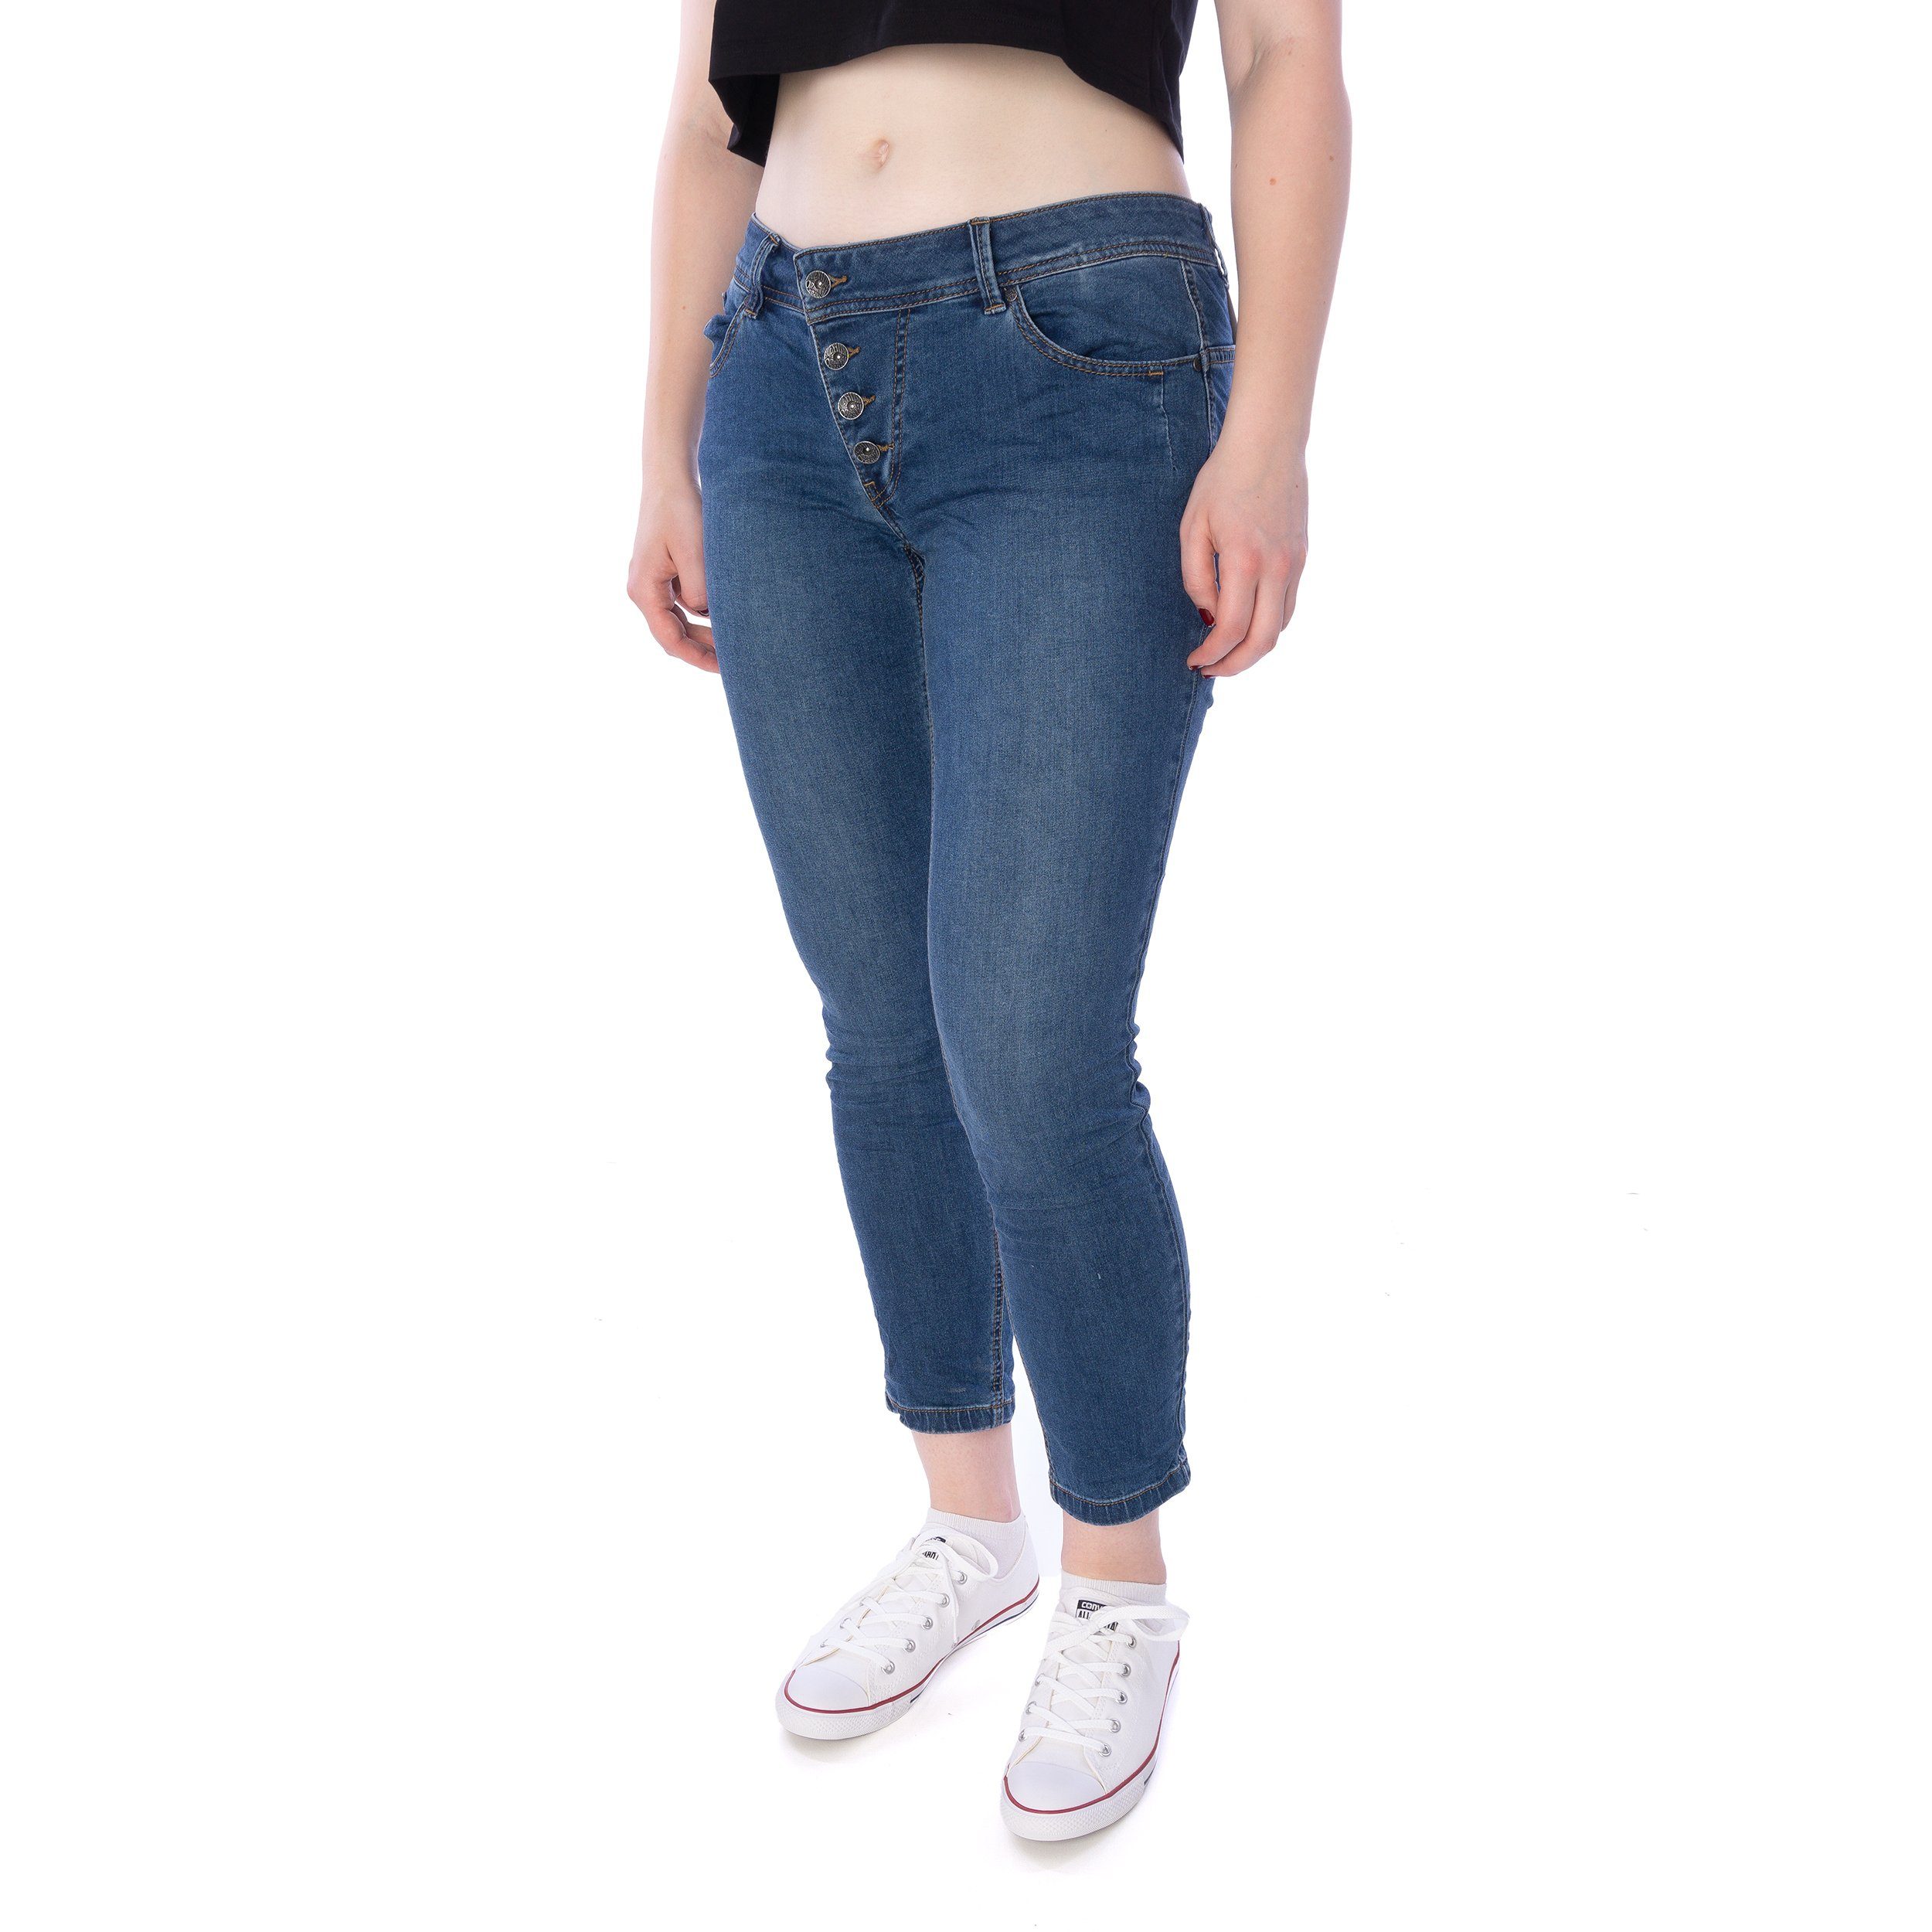 Buena Vista Slim-fit-Jeans Buena Vista blau Jeans stretch Hose Malibu 7/8 Damen denim